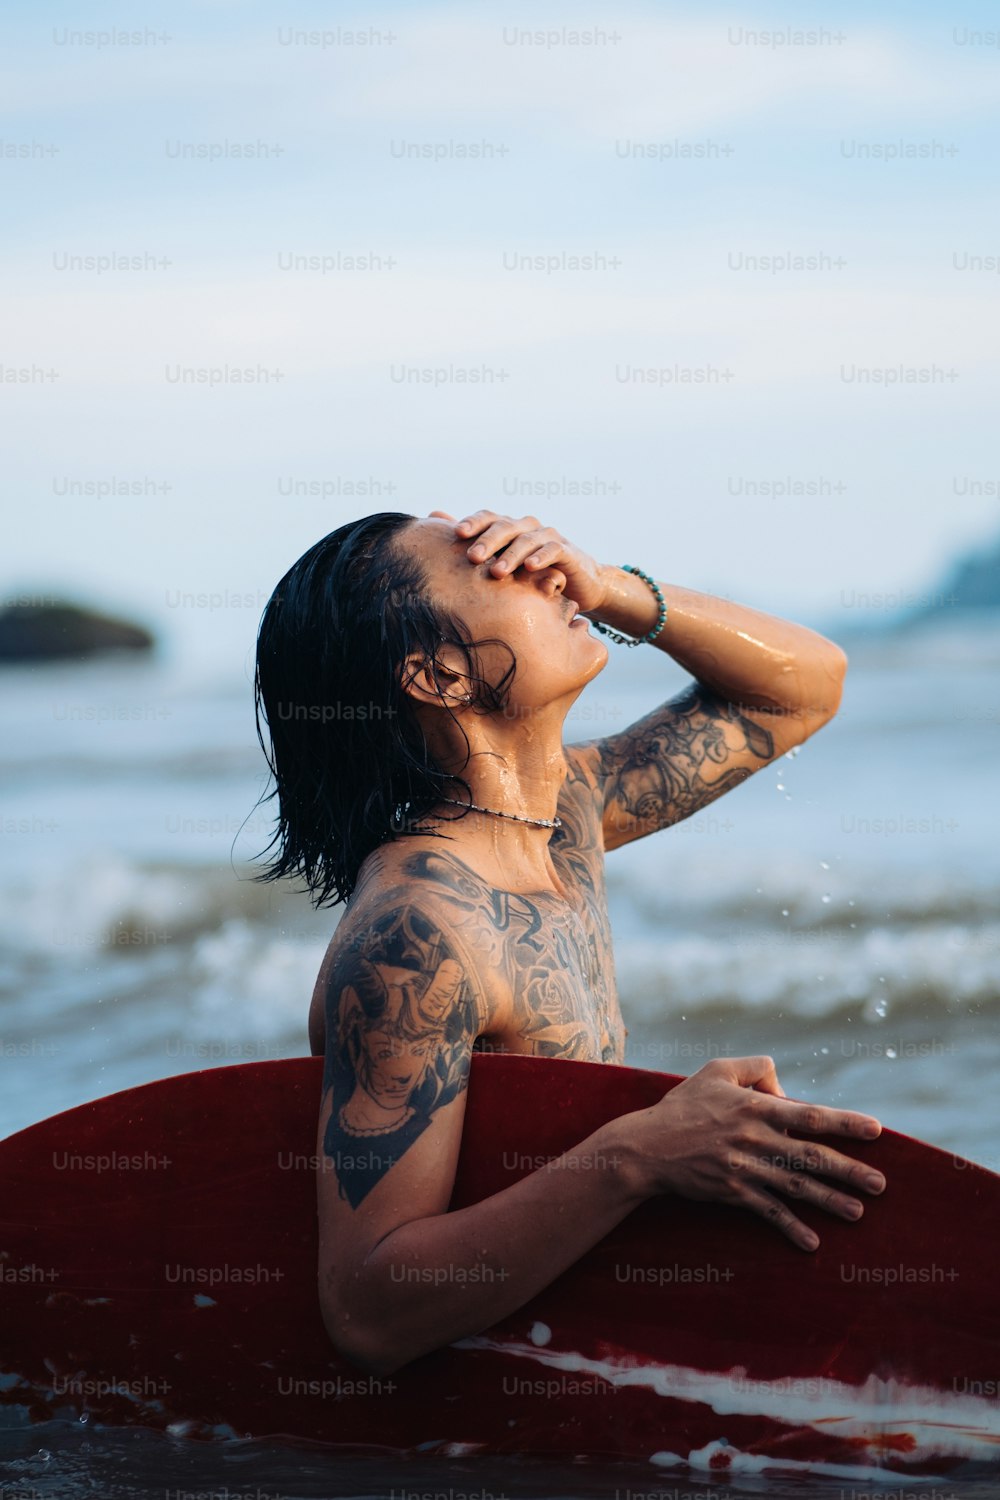 Ein Mann mit Tätowierungen auf seinem Körper, der auf einem Surfbrett sitzt